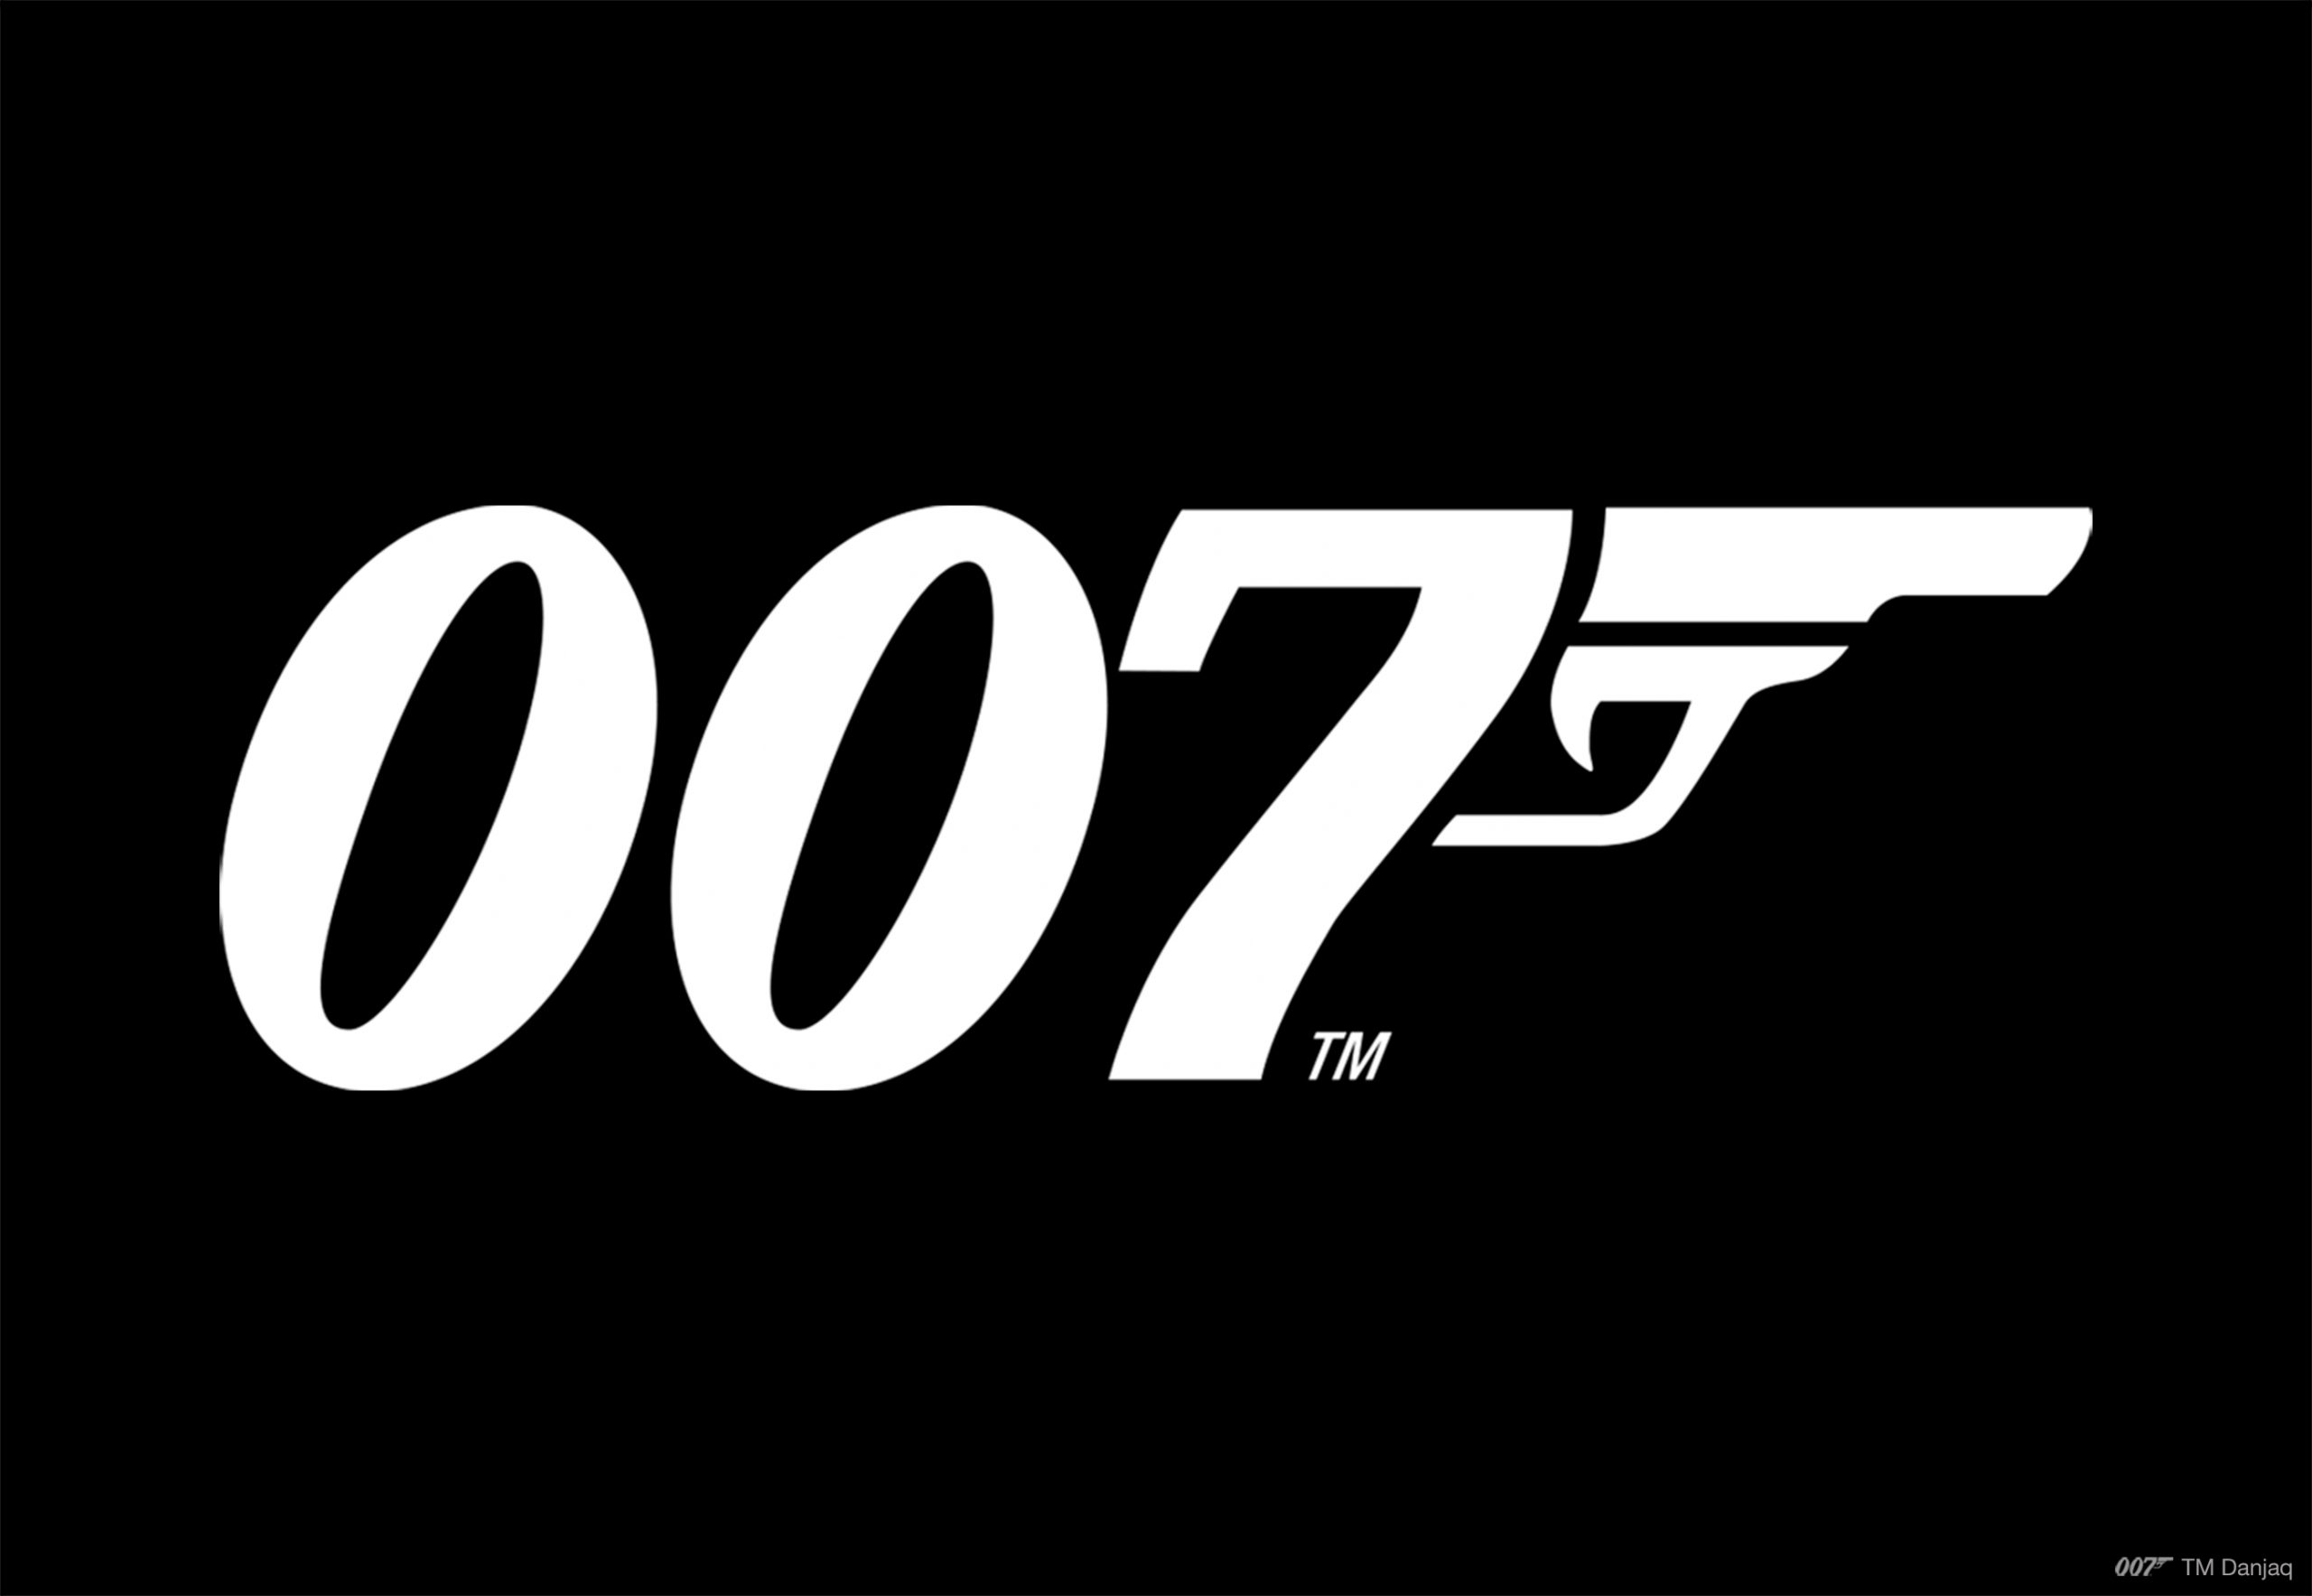 [007.com] Bonds, James Bonds